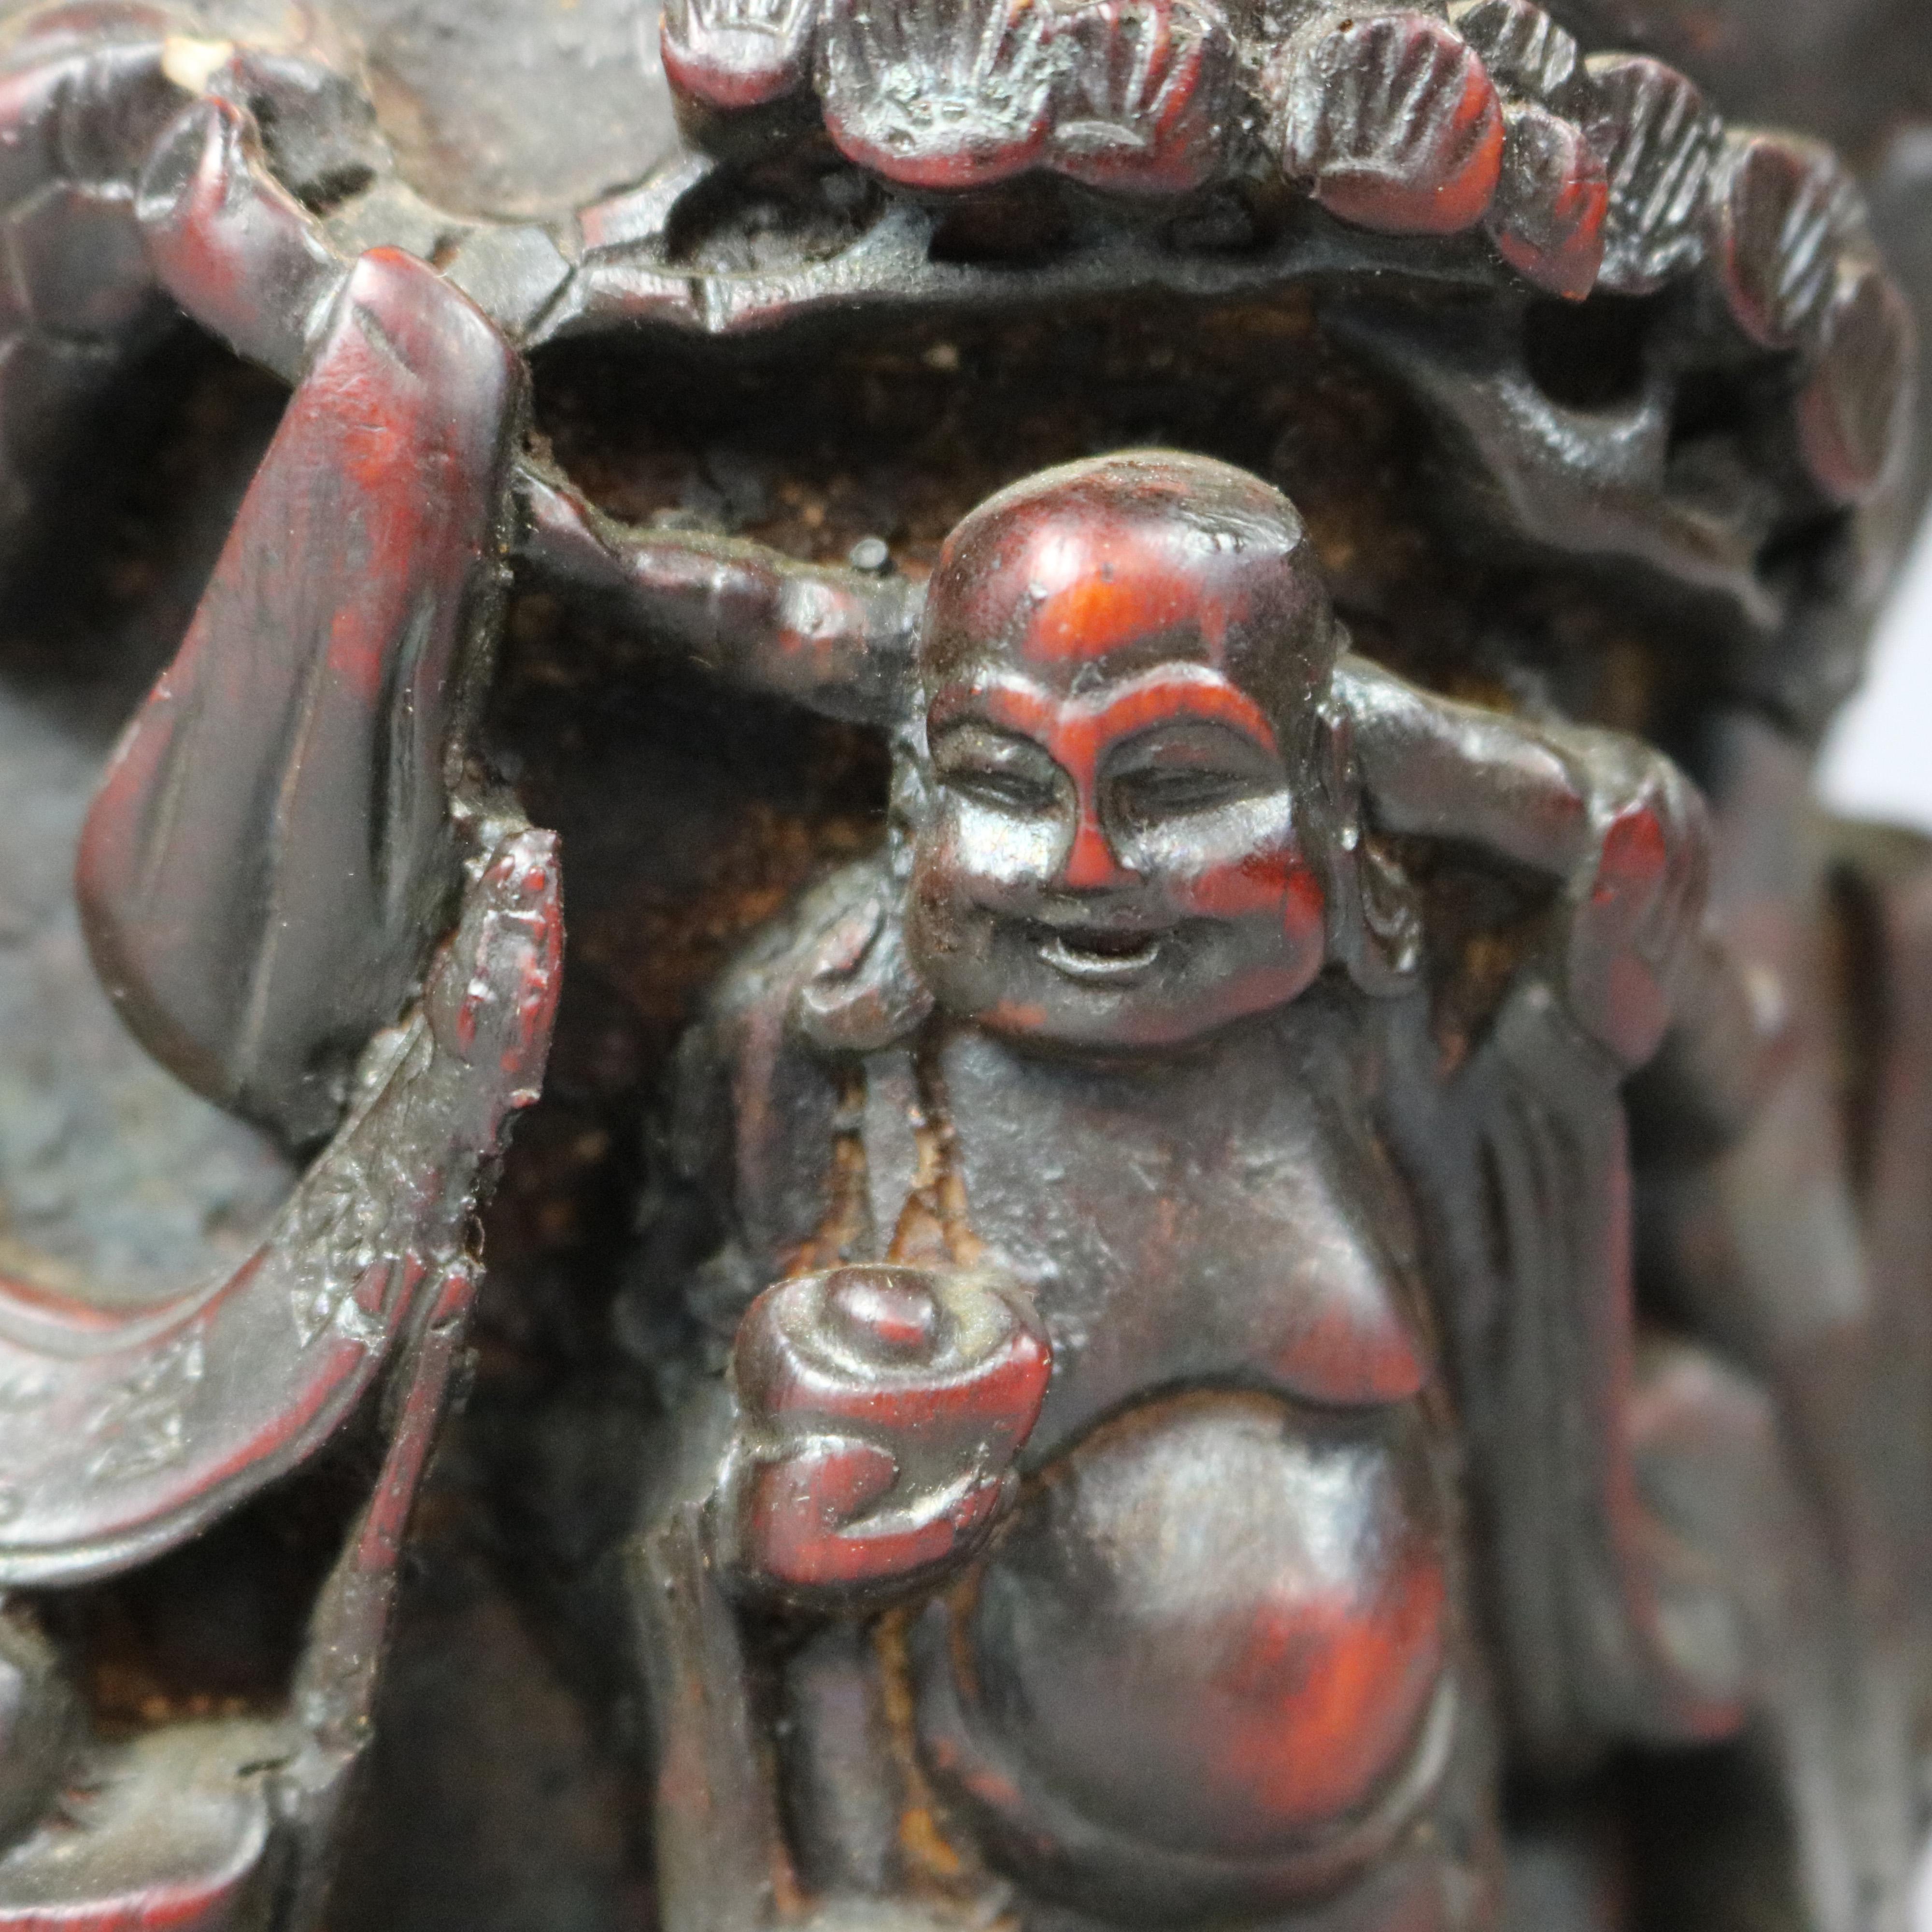 Une coupe à libation chinoise ancienne offre une construction en résine avec une scène de genre sculptée en relief avec des personnages et un chariot dans un décor de campagne, 20e siècle.

Mesures : 6 